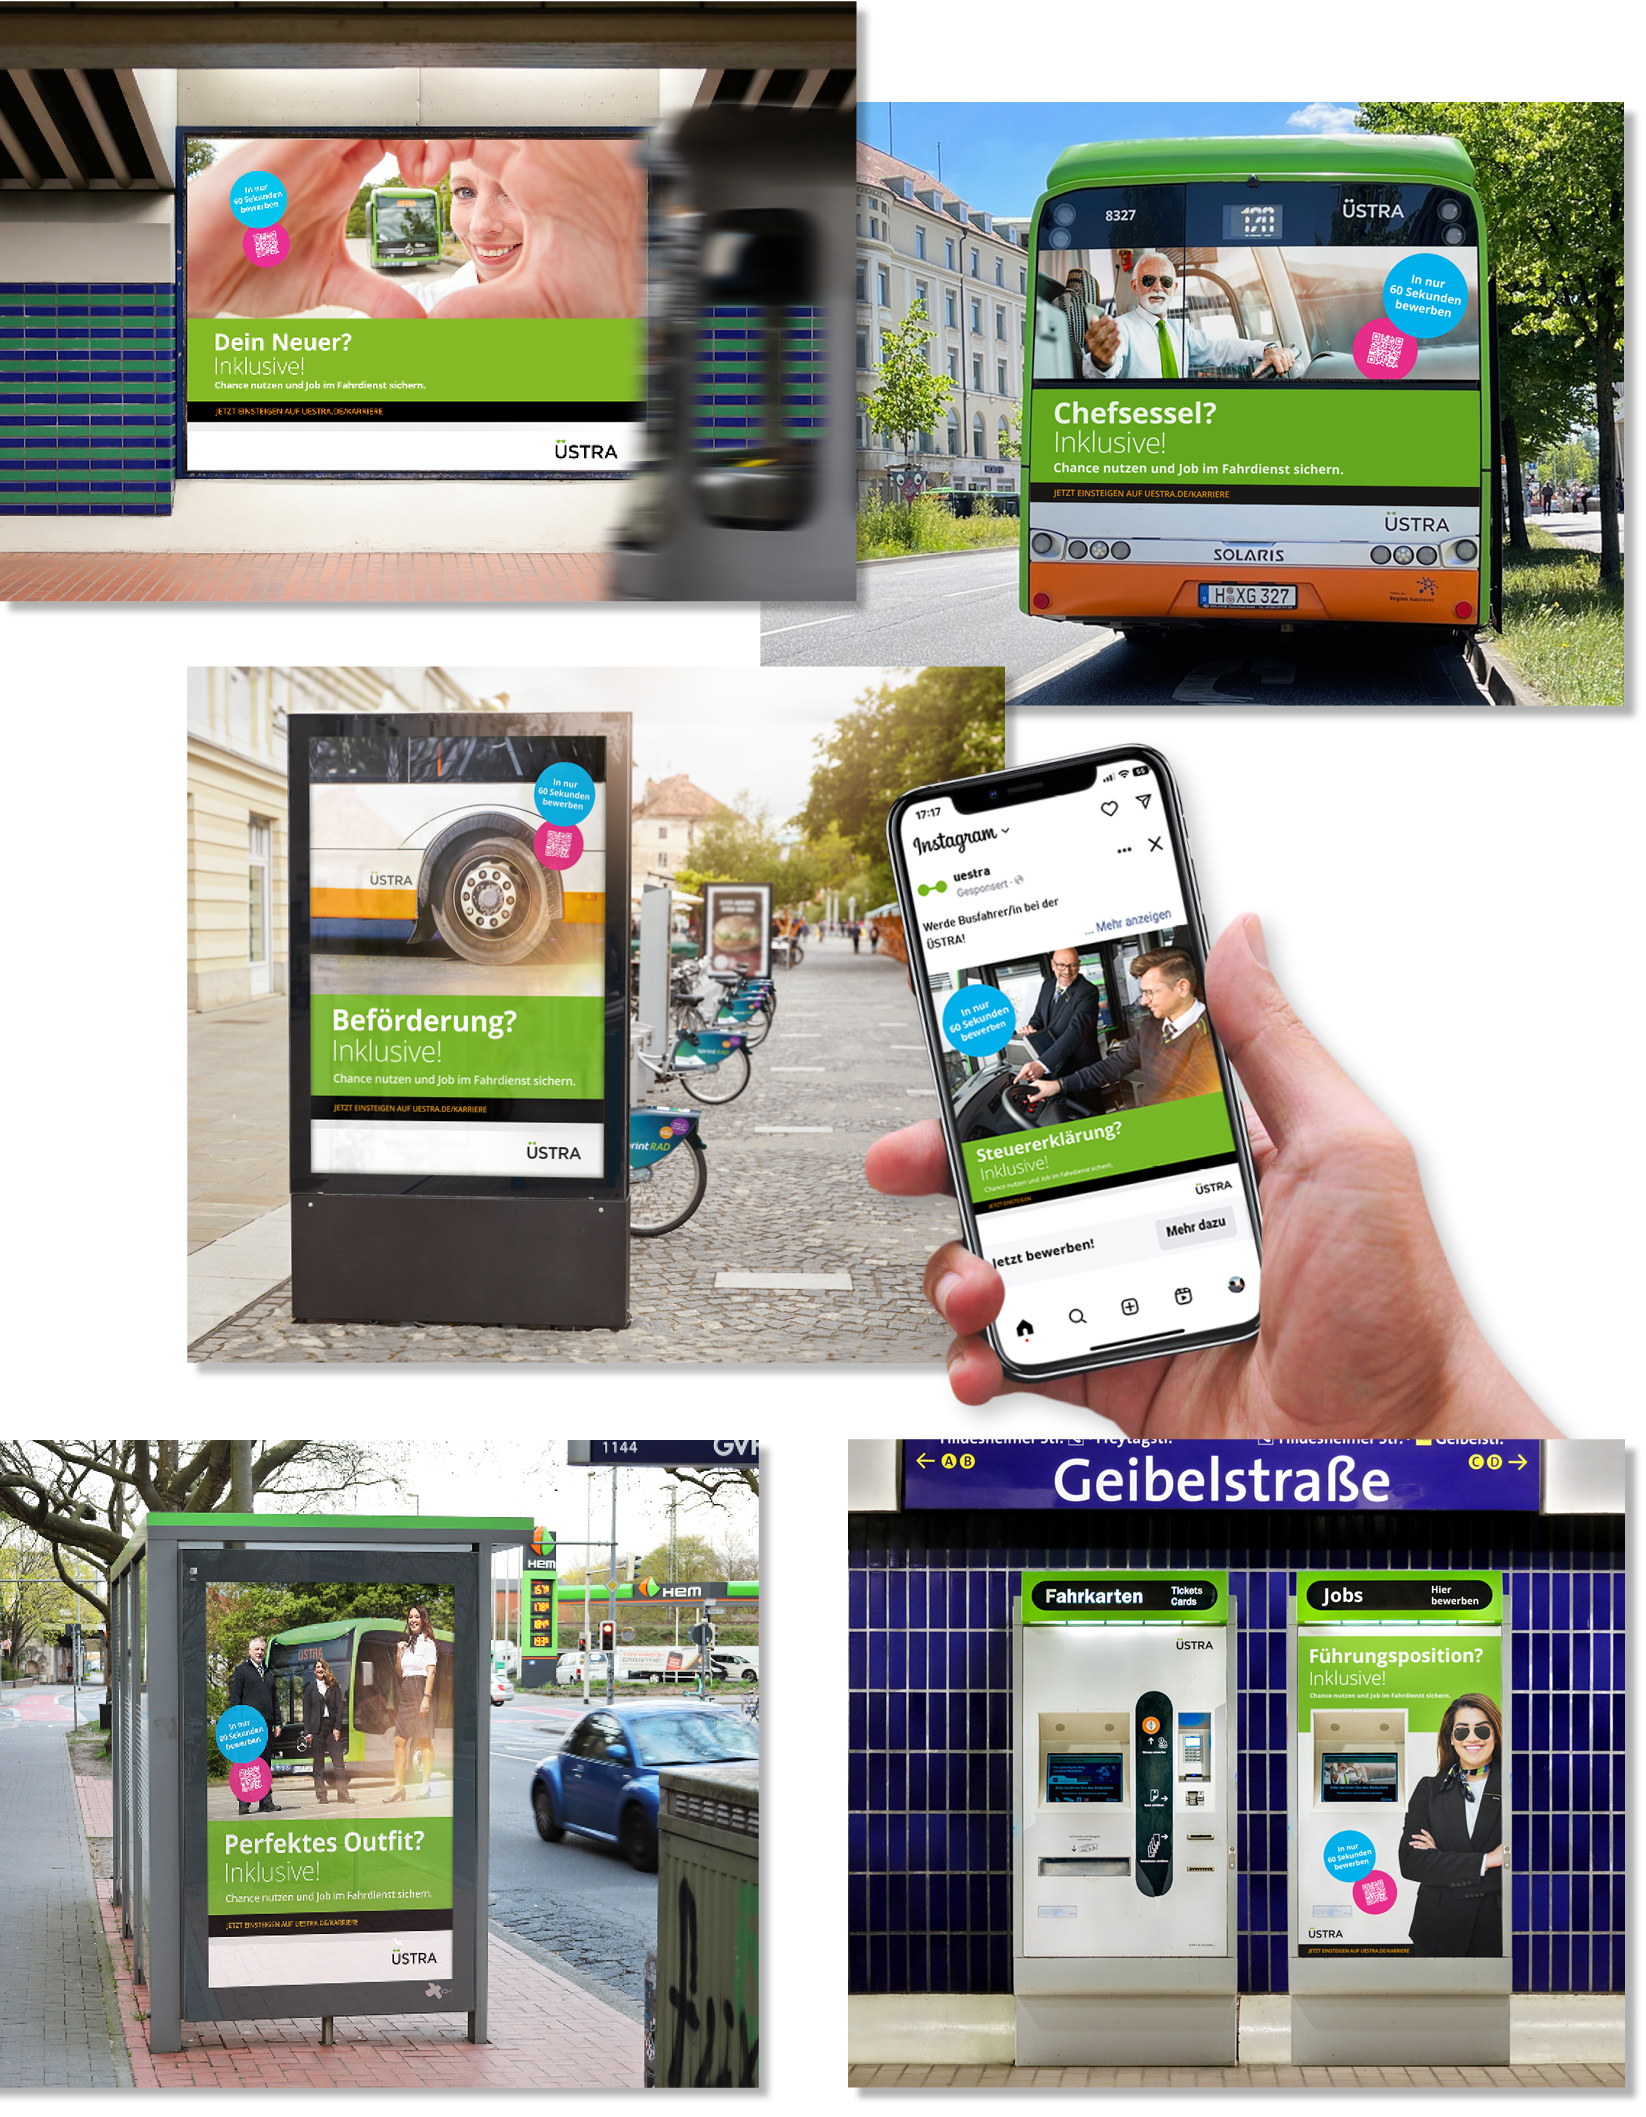 Eine Collage mehrerer Bilder zur ÜSTRA Recruiting Kampagne: Ein Plakat, ein Bus, ein City Light Poster, eine Instagram-Anzeige und ein Fahrkartenautomat.